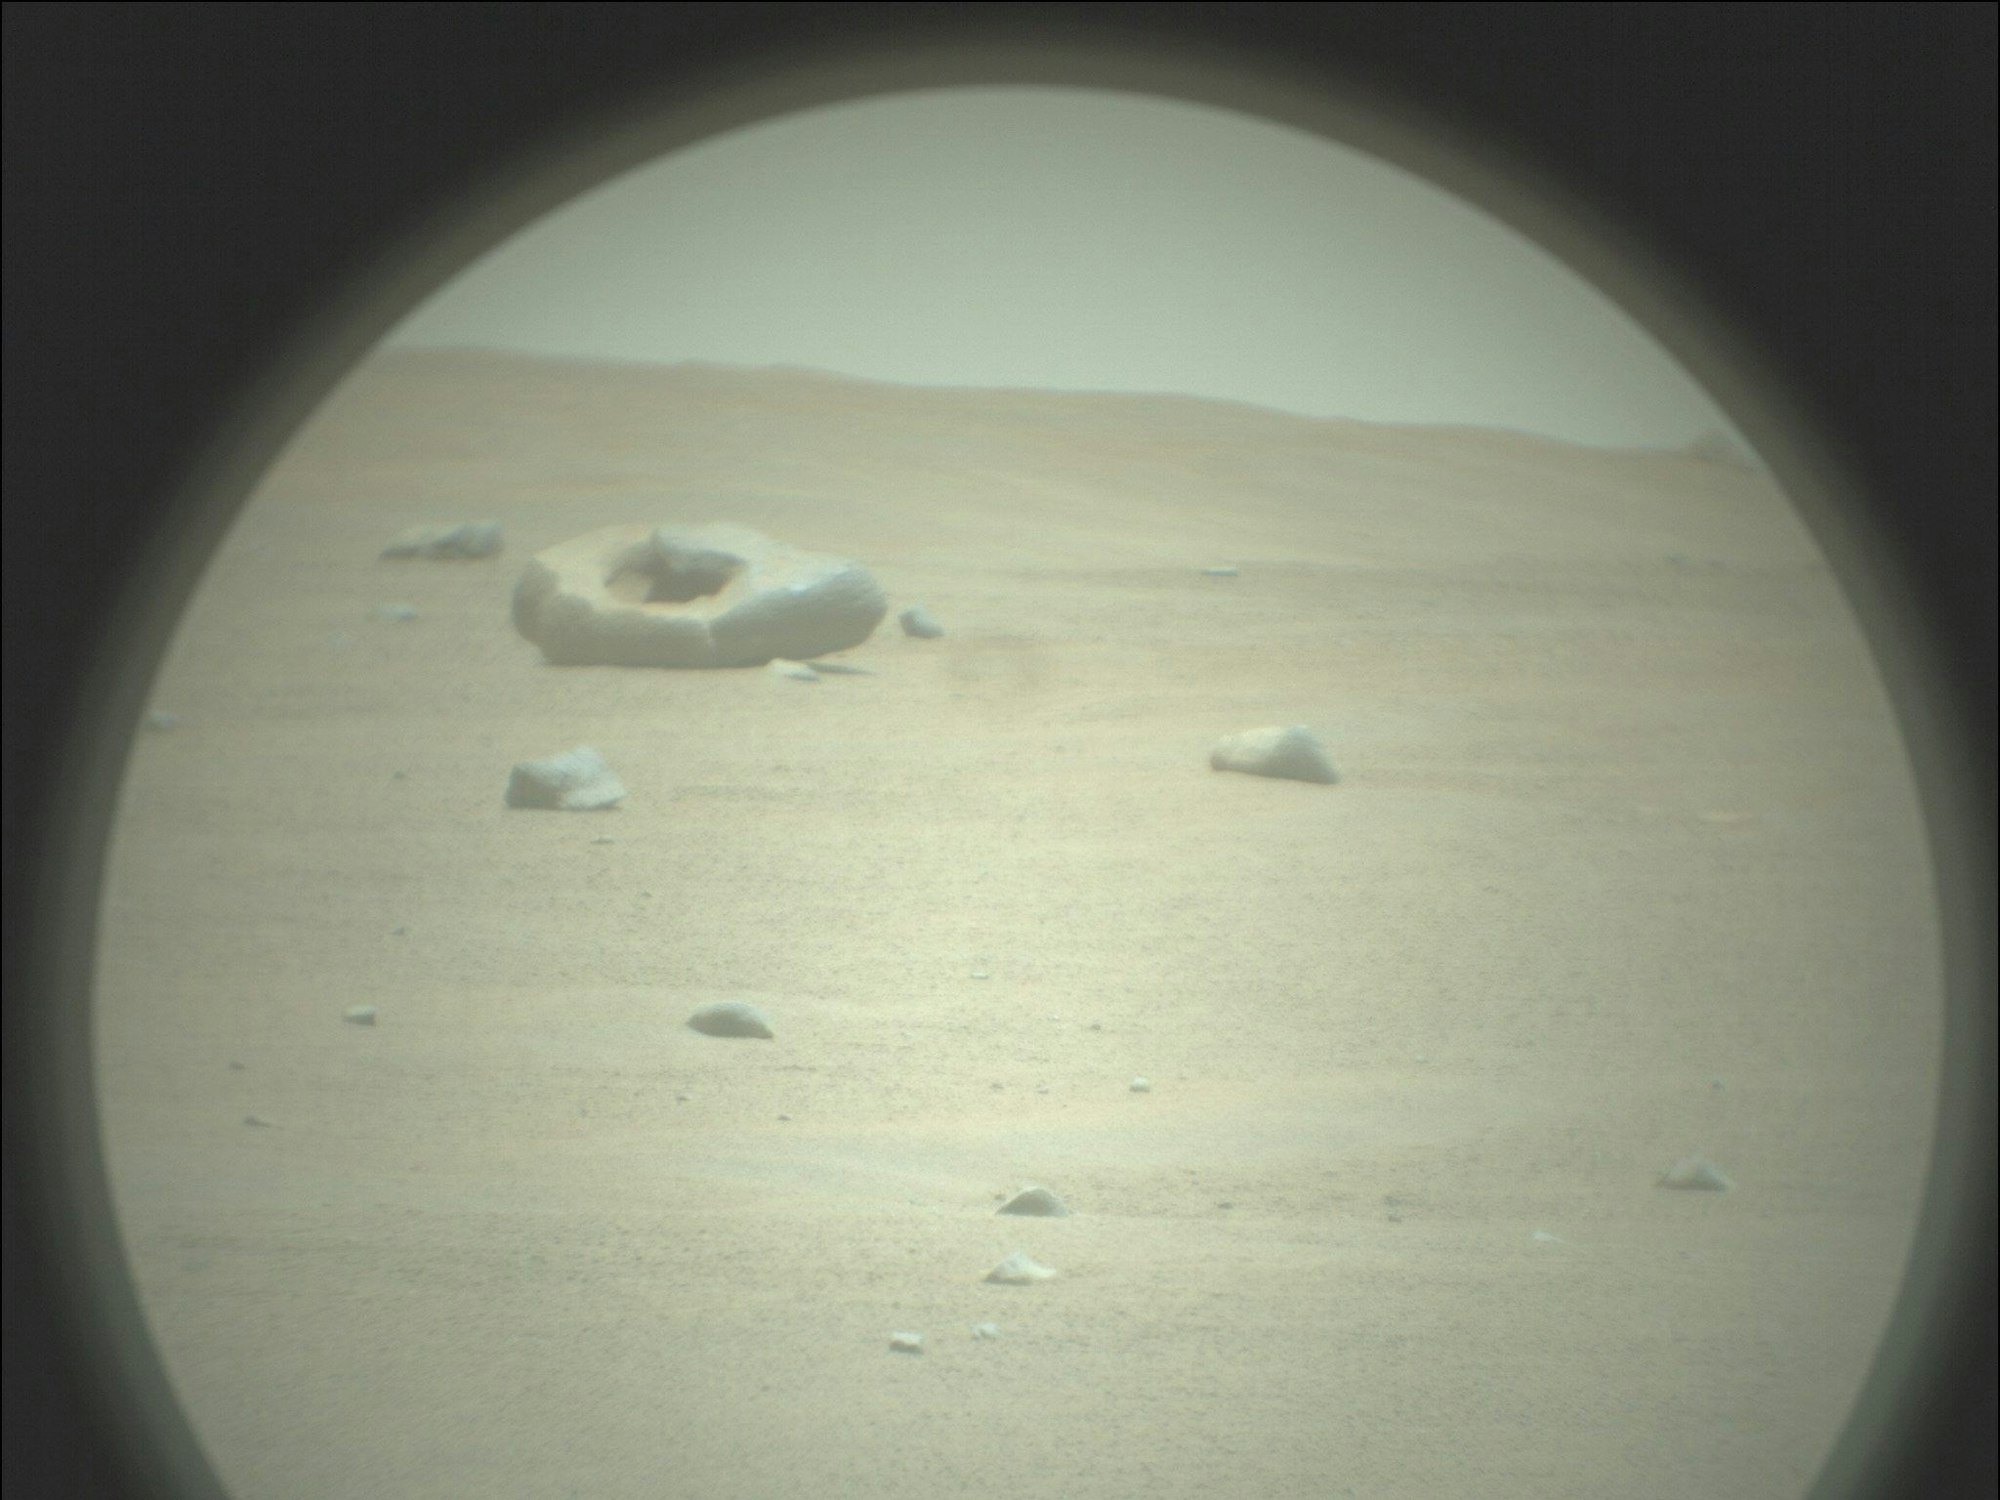 Ein Stein in der Form eines Donuts auf dem Mars.